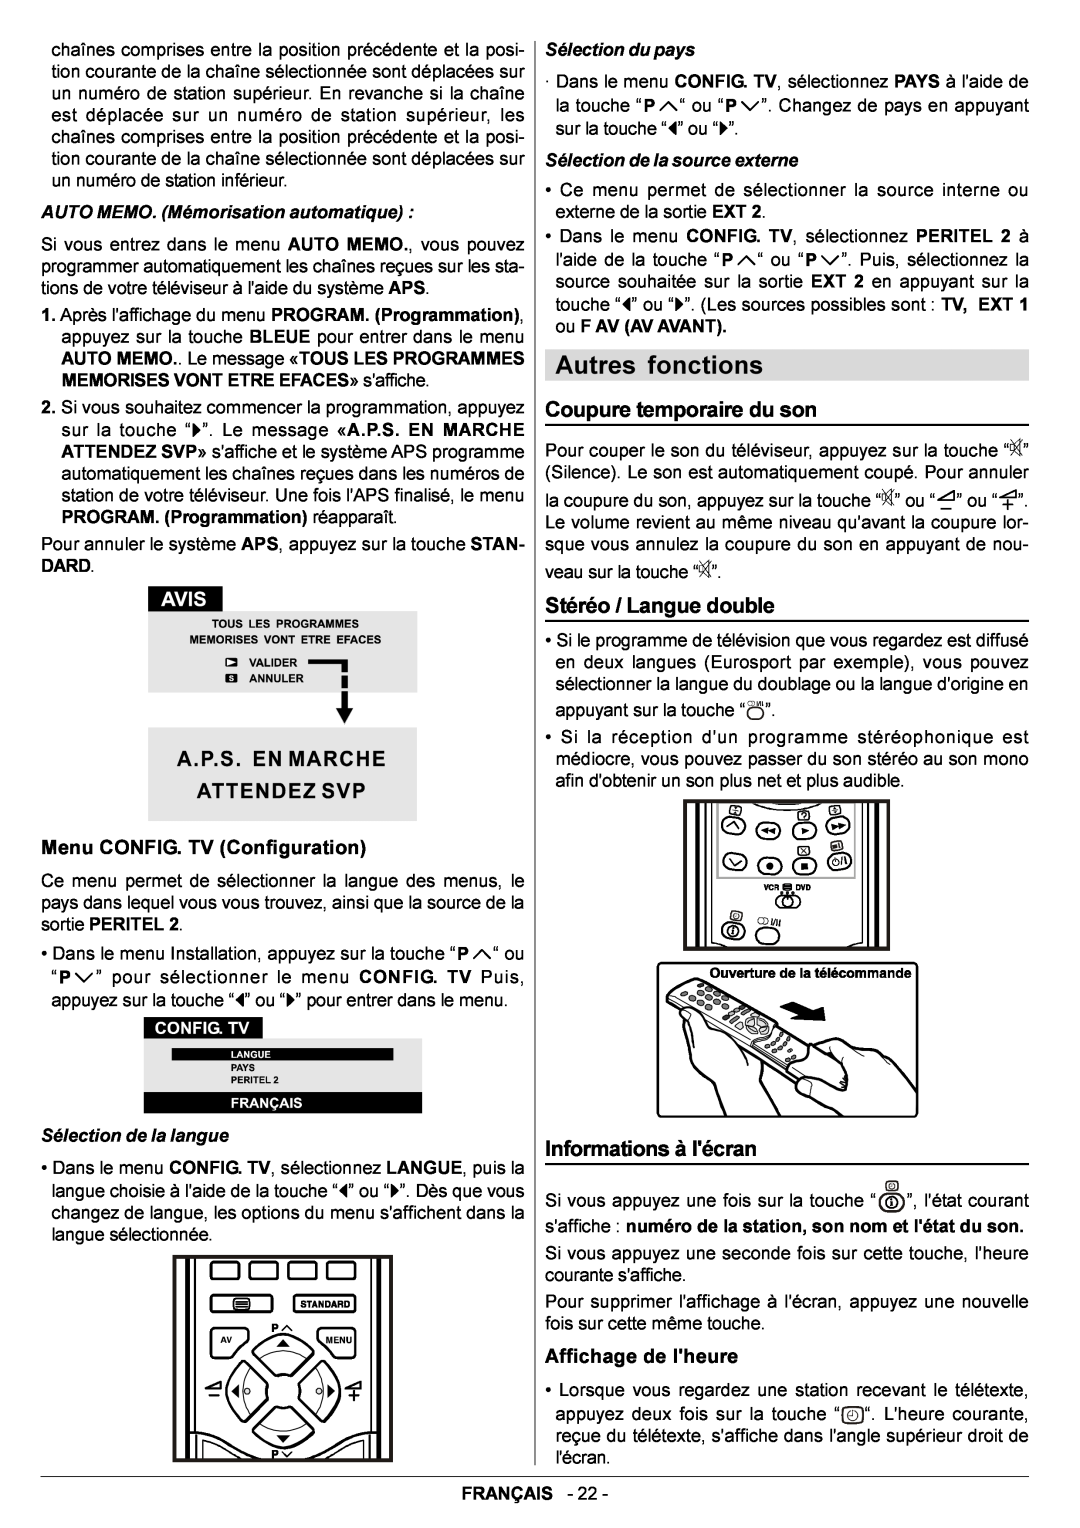 JVC AV29BF10EPS Autres fonctions, Coupure temporaire du son, Stéréo / Langue double, Affichage de lheure, lécran, Français 